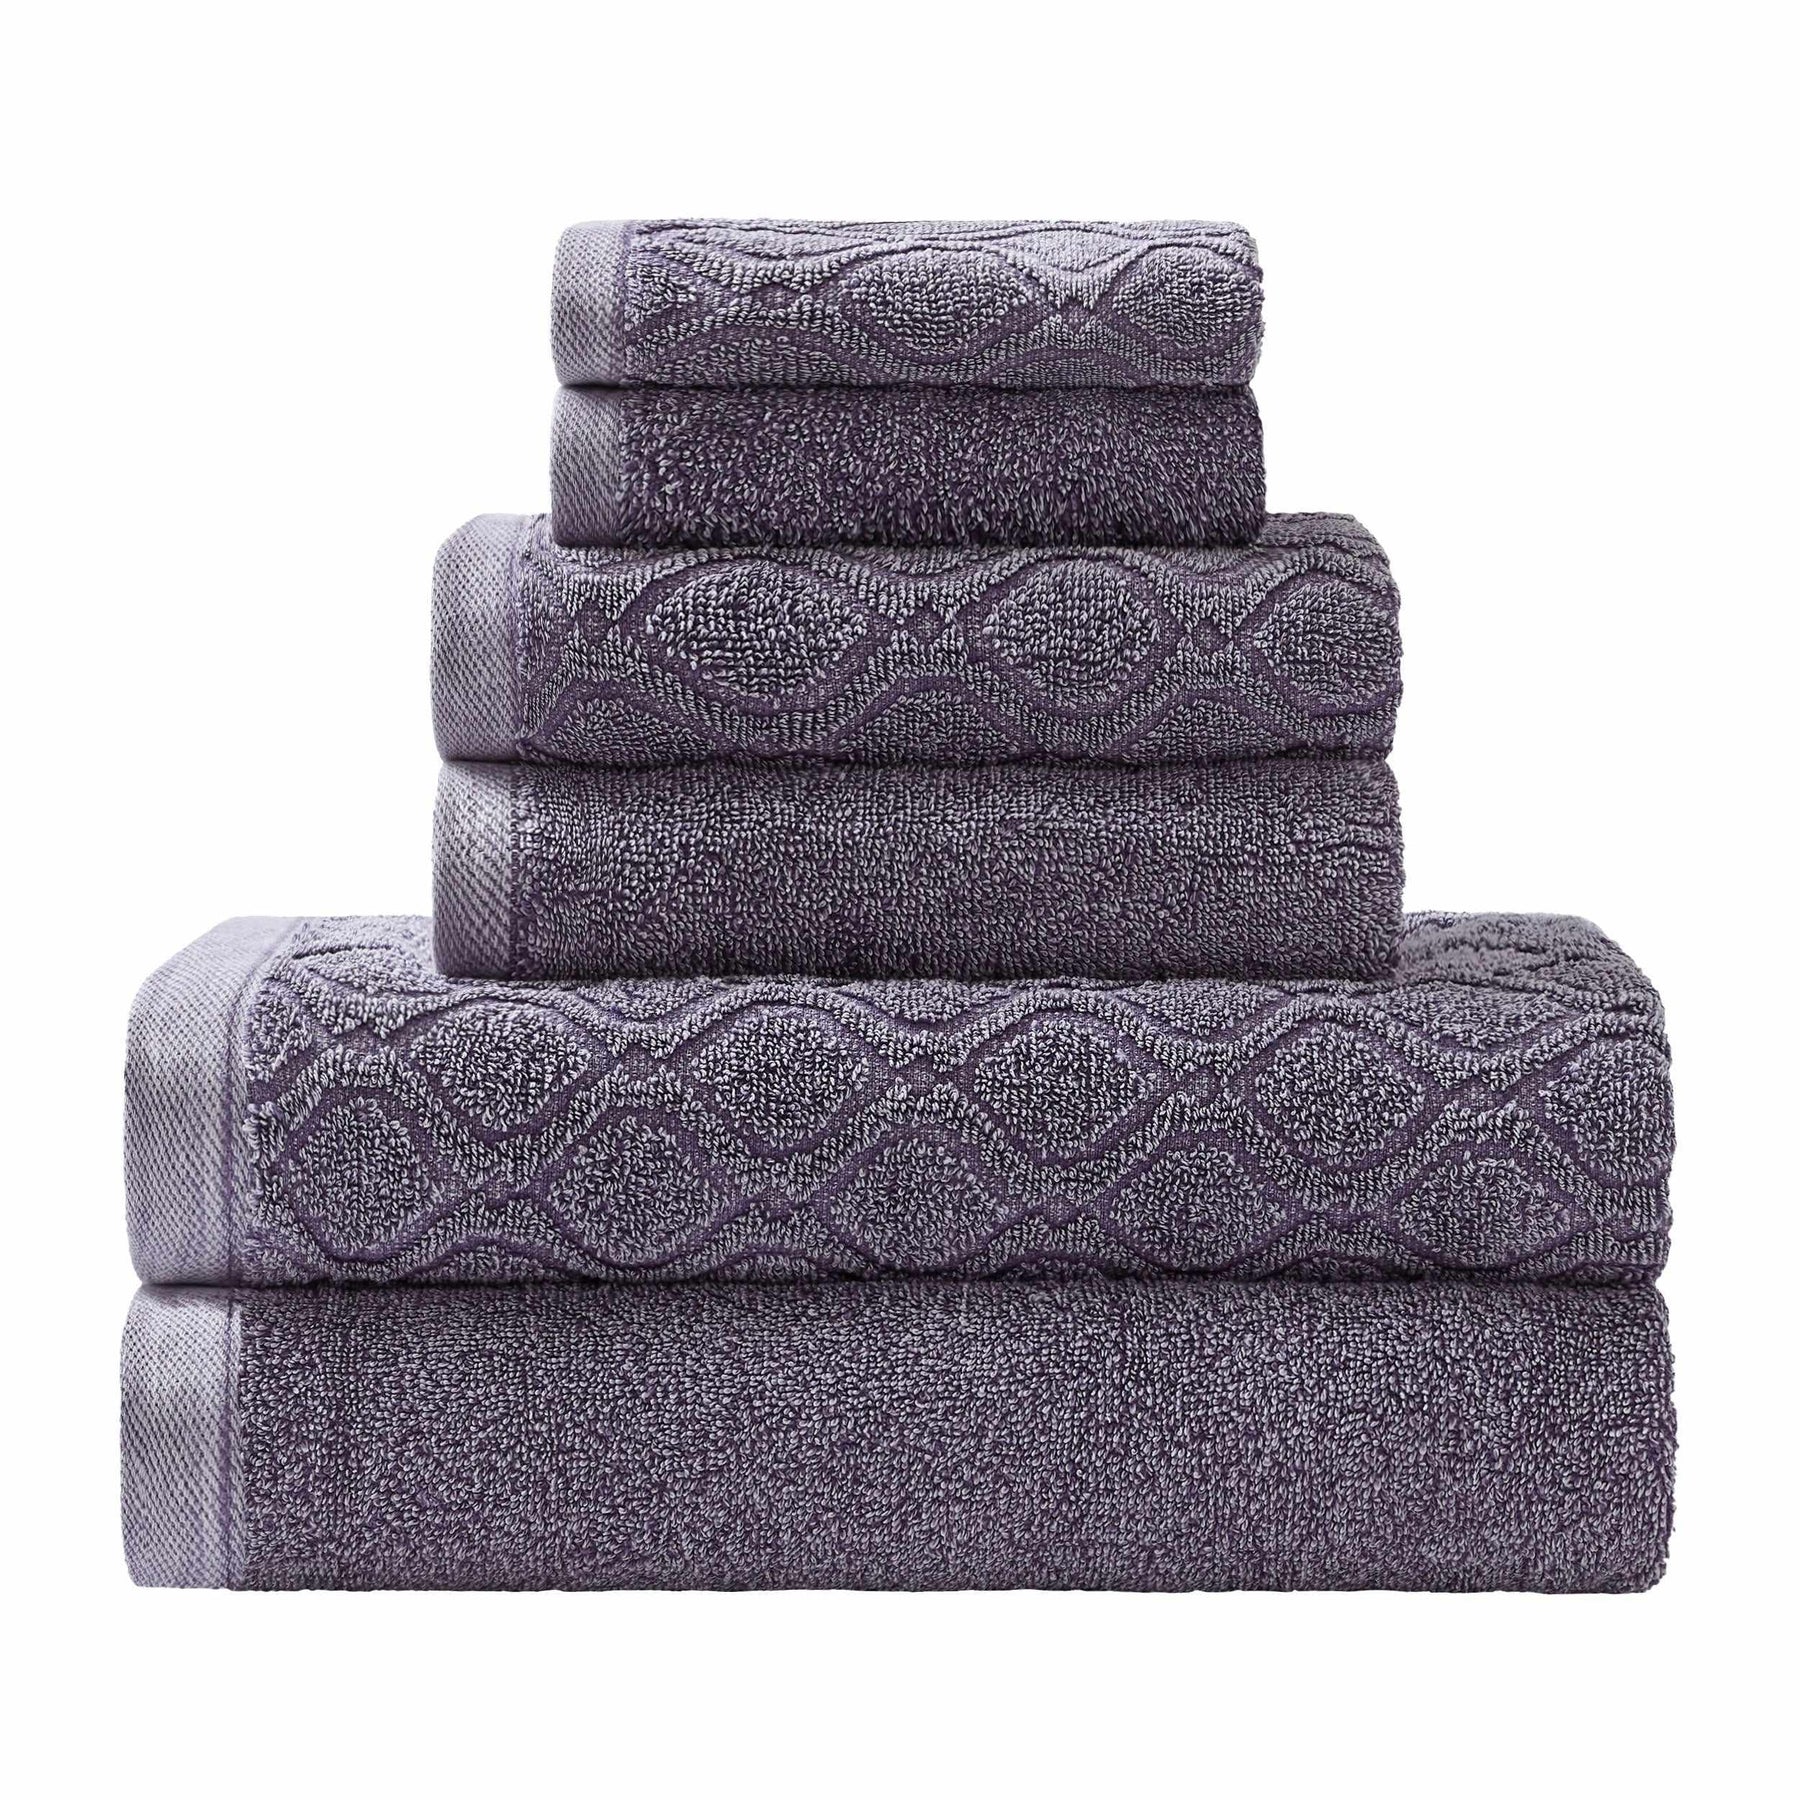 Denim Wash Jacquard 6-Piece Cotton Bath Towel Set - Lilac